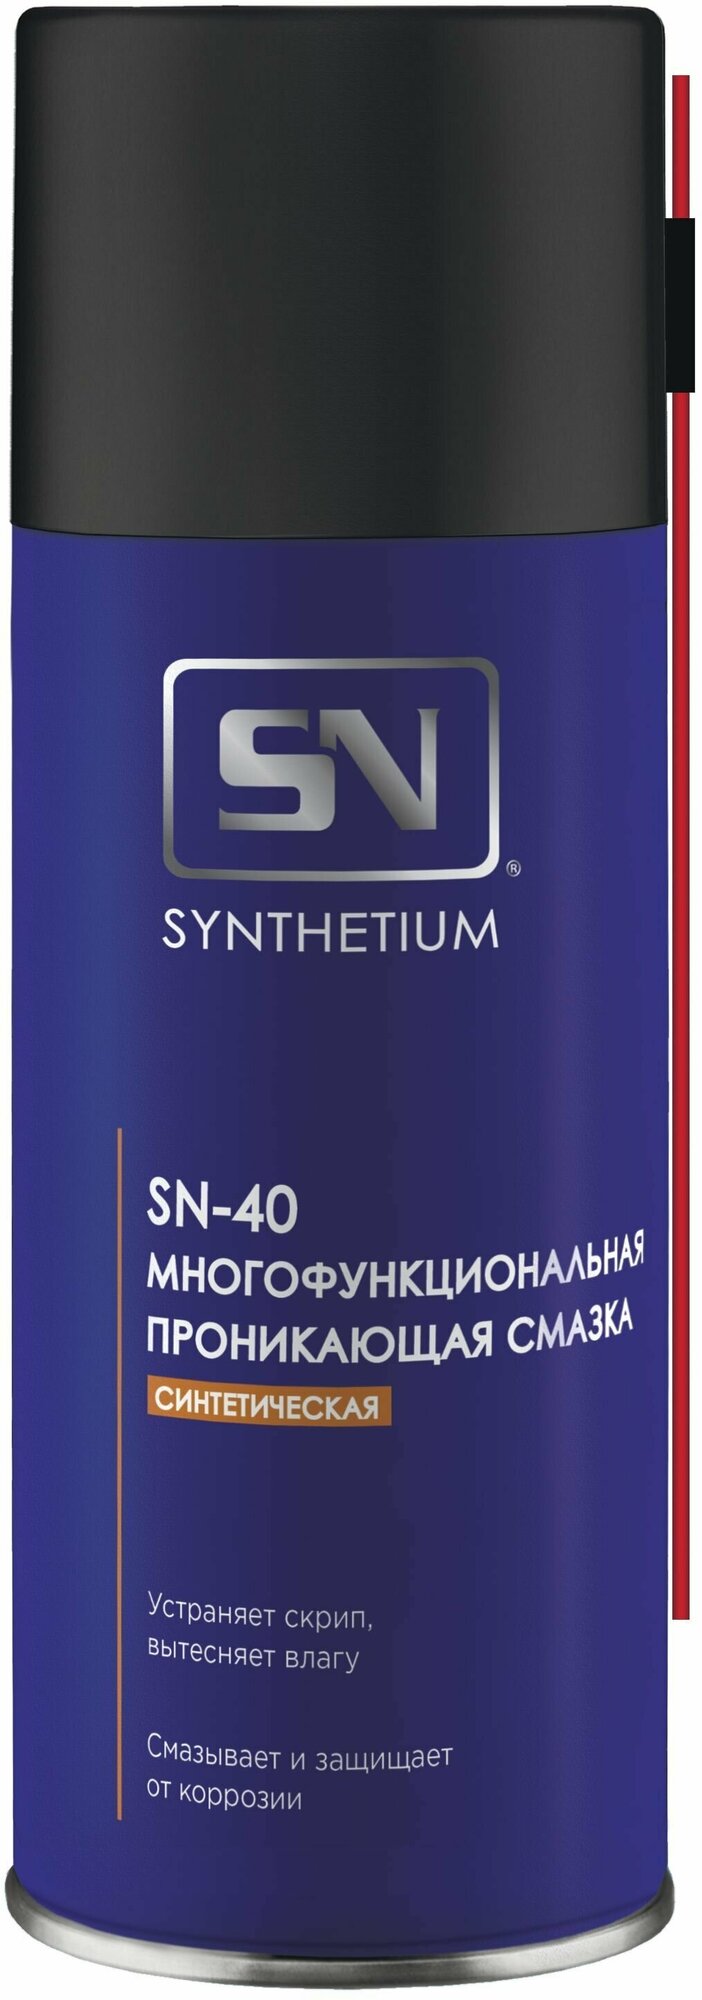 Смазка ASTROHIM SN SN-4002 многофункциональная проникающая серия "Synthetium" SN-40